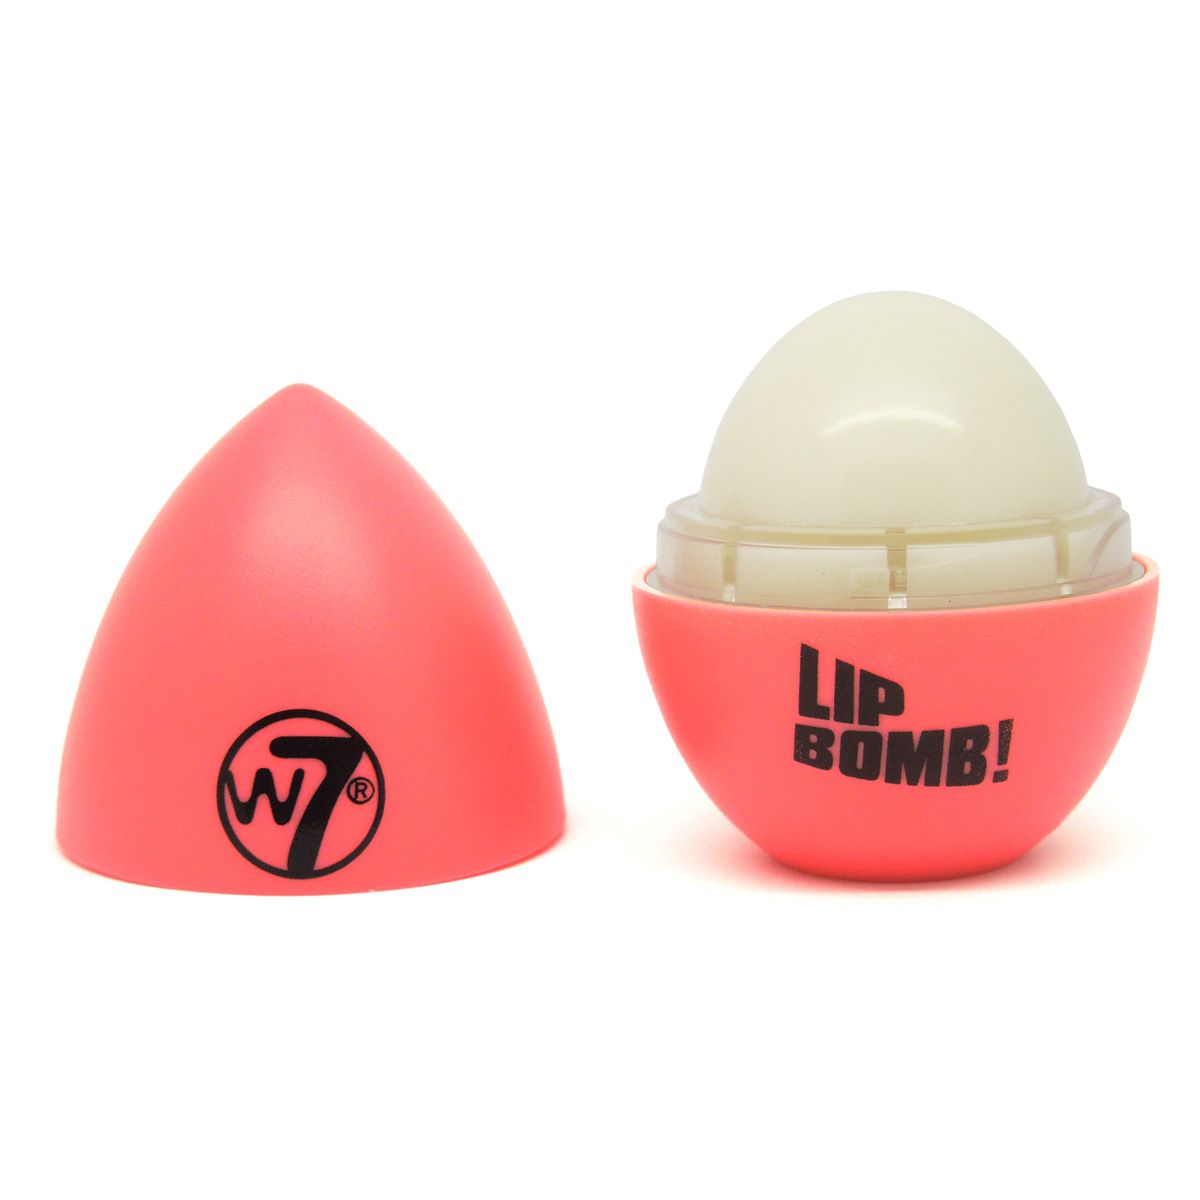 Lipbalm - Lip Bomb!